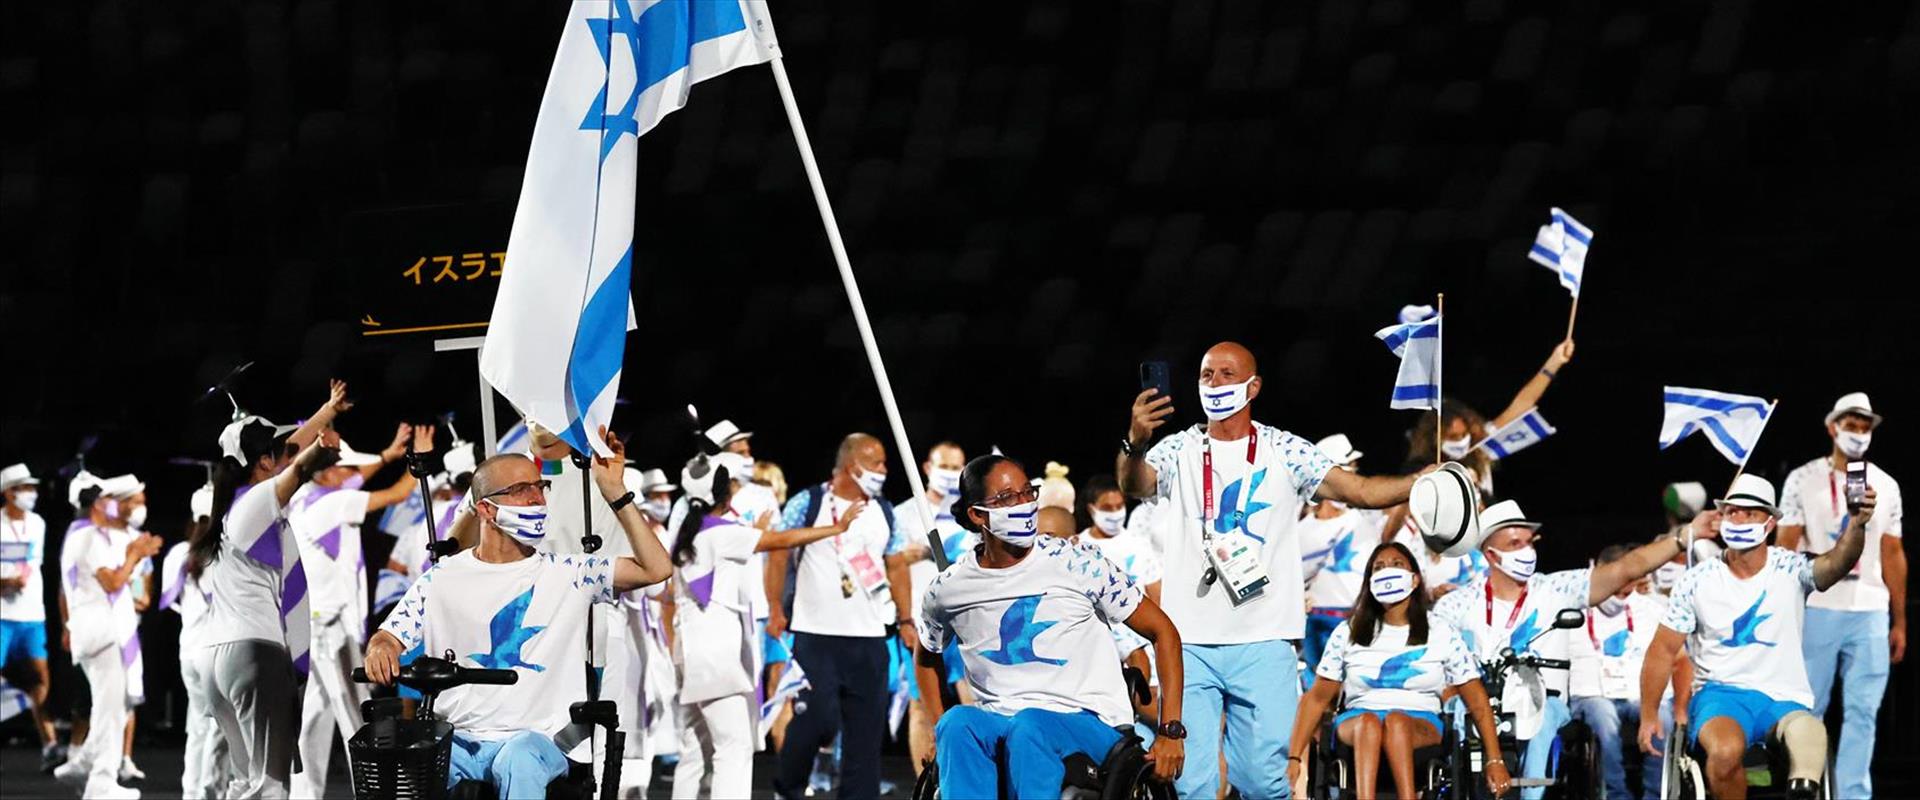 המשלחת הישראלית למשחקים הפראלימפיים